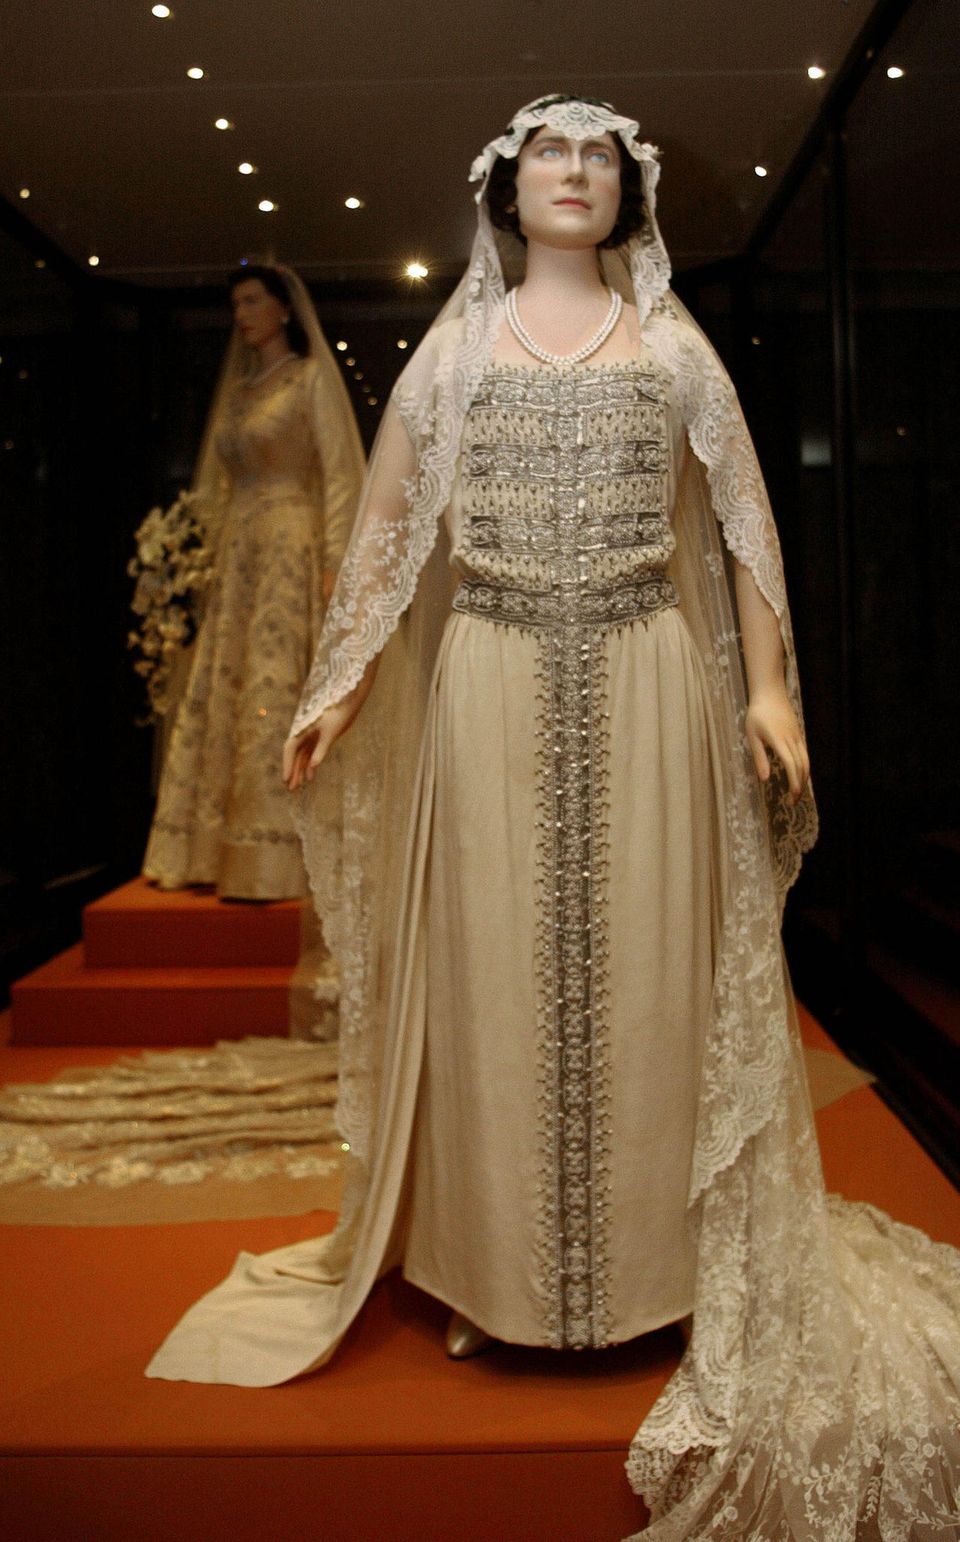 Das Brautkleid von Queen Mum ist heute ebenfalls im Museum zu bestaunen. Vor allem die bestickte Borte, die bis zum Fußende ragt, macht das Kleid zu etwas ganz Besonderem.